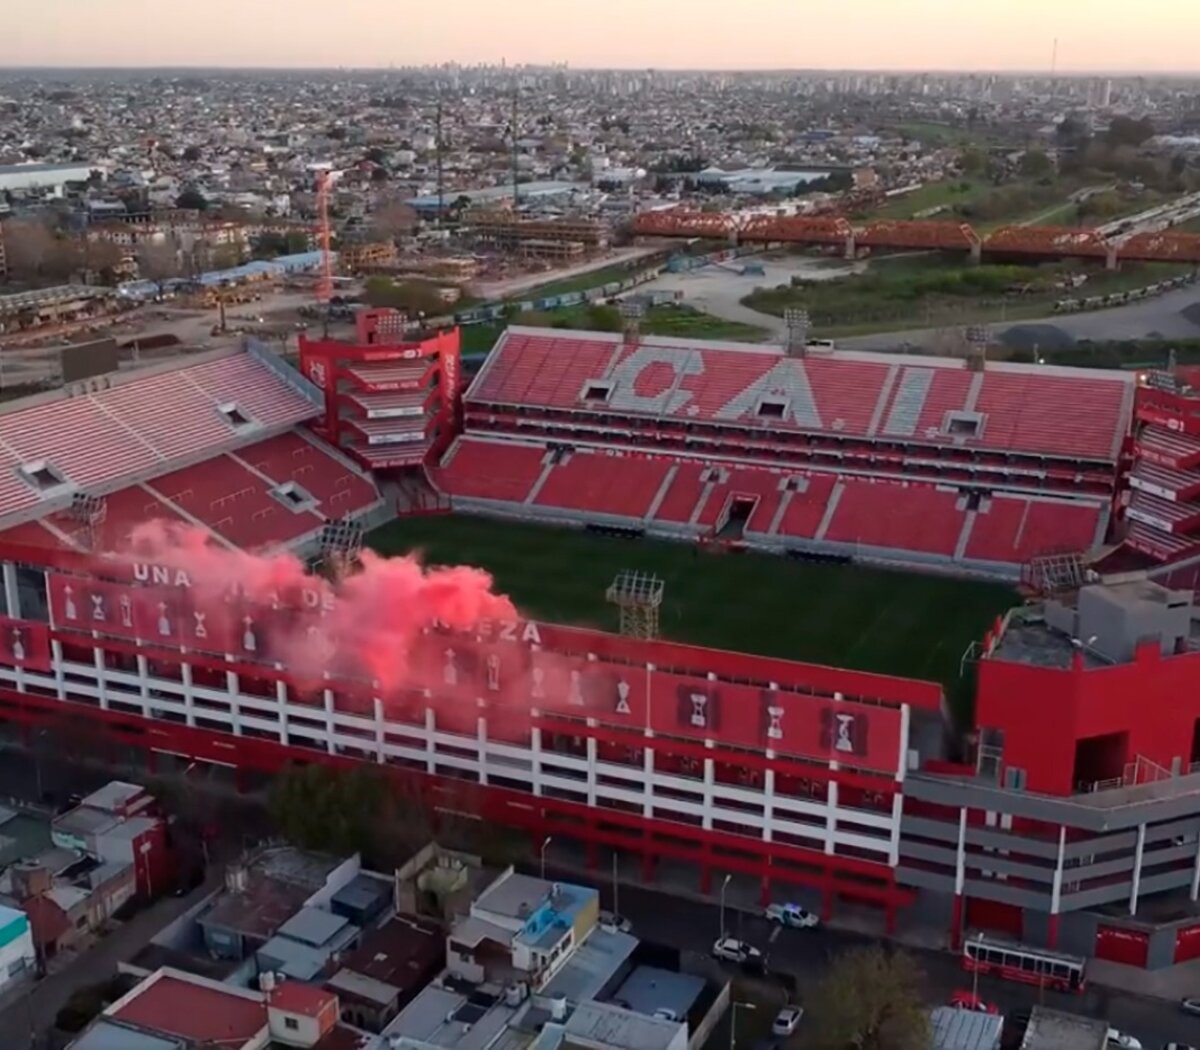 Estadio Libertadores de America del Club Atletico Independiente